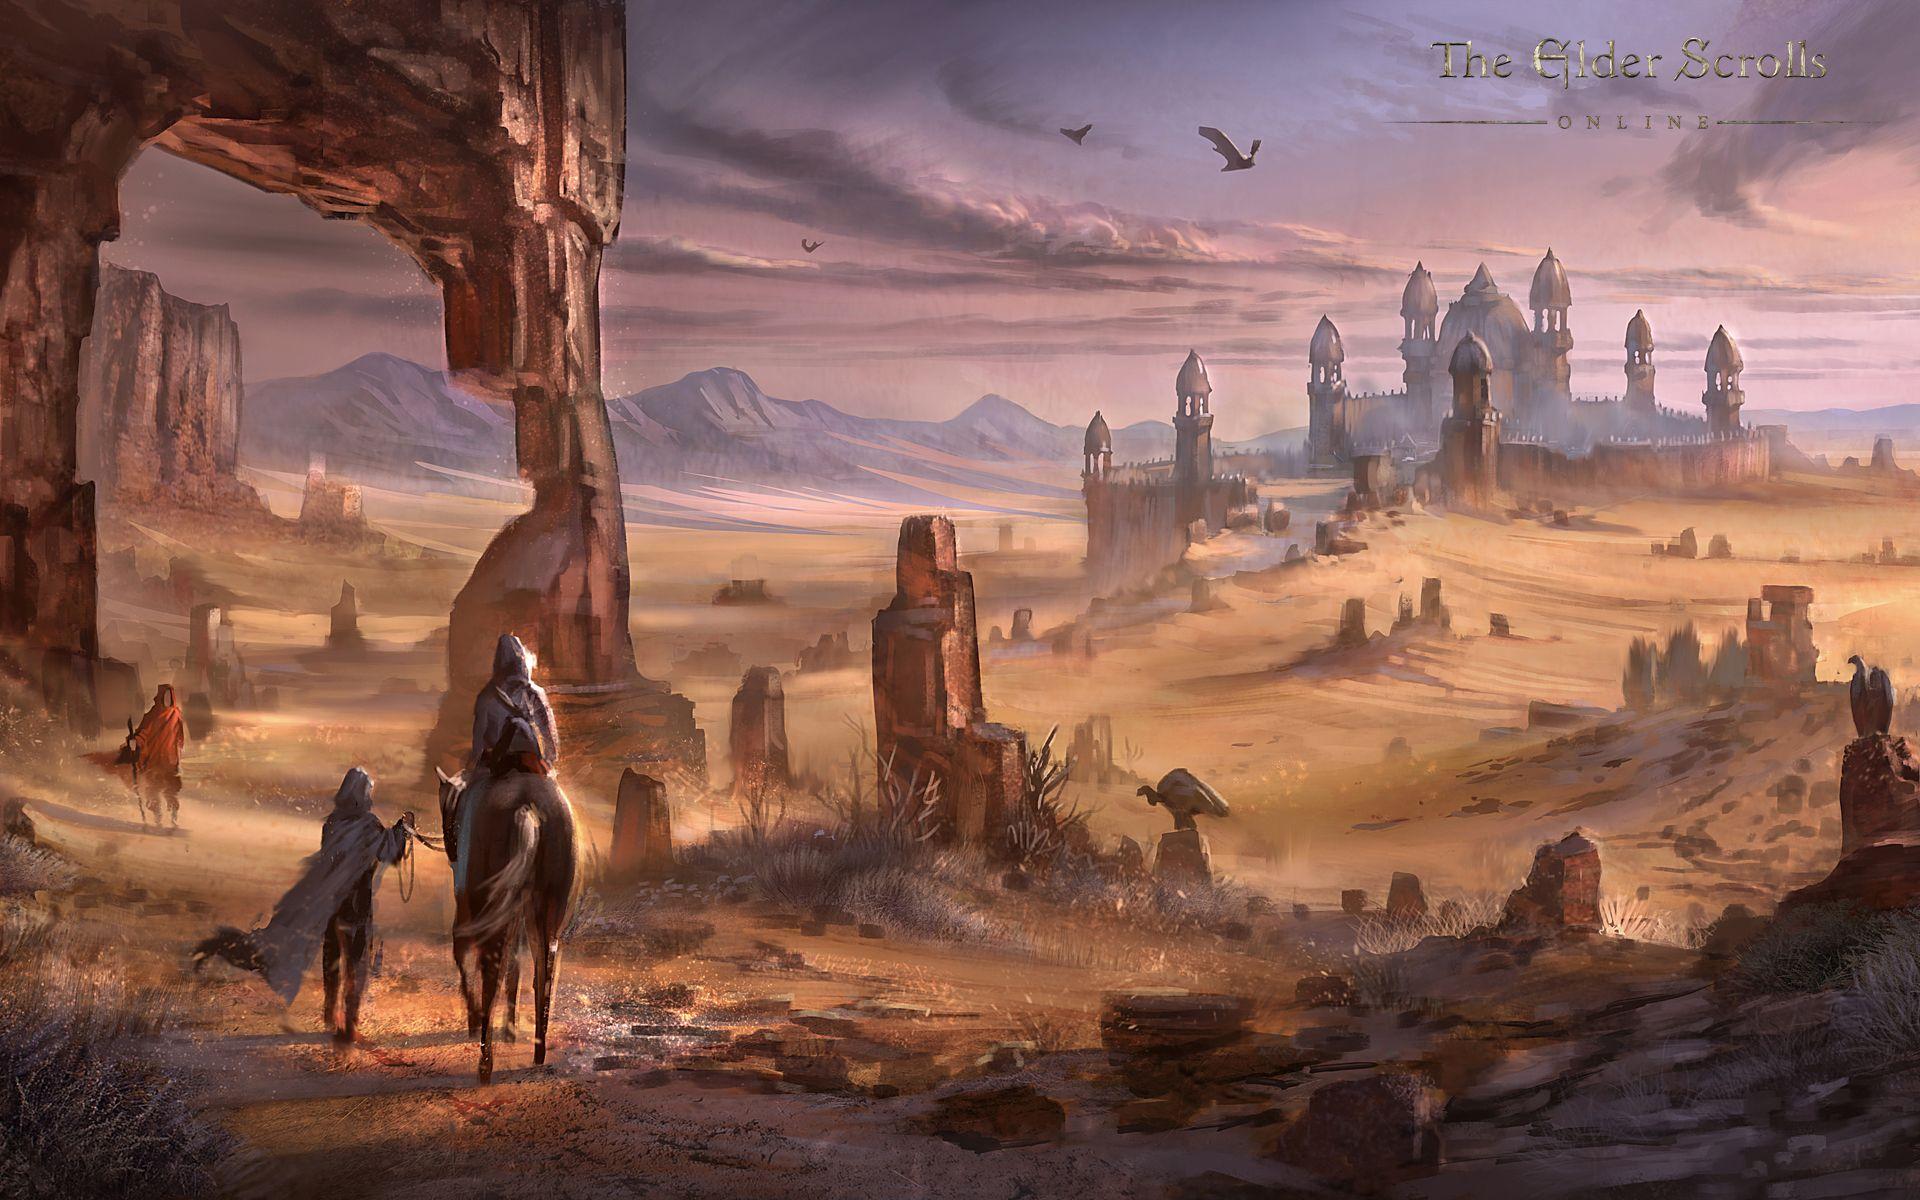 The Elder Scrolls Online Wallpaper Concept Art. Concept Art World